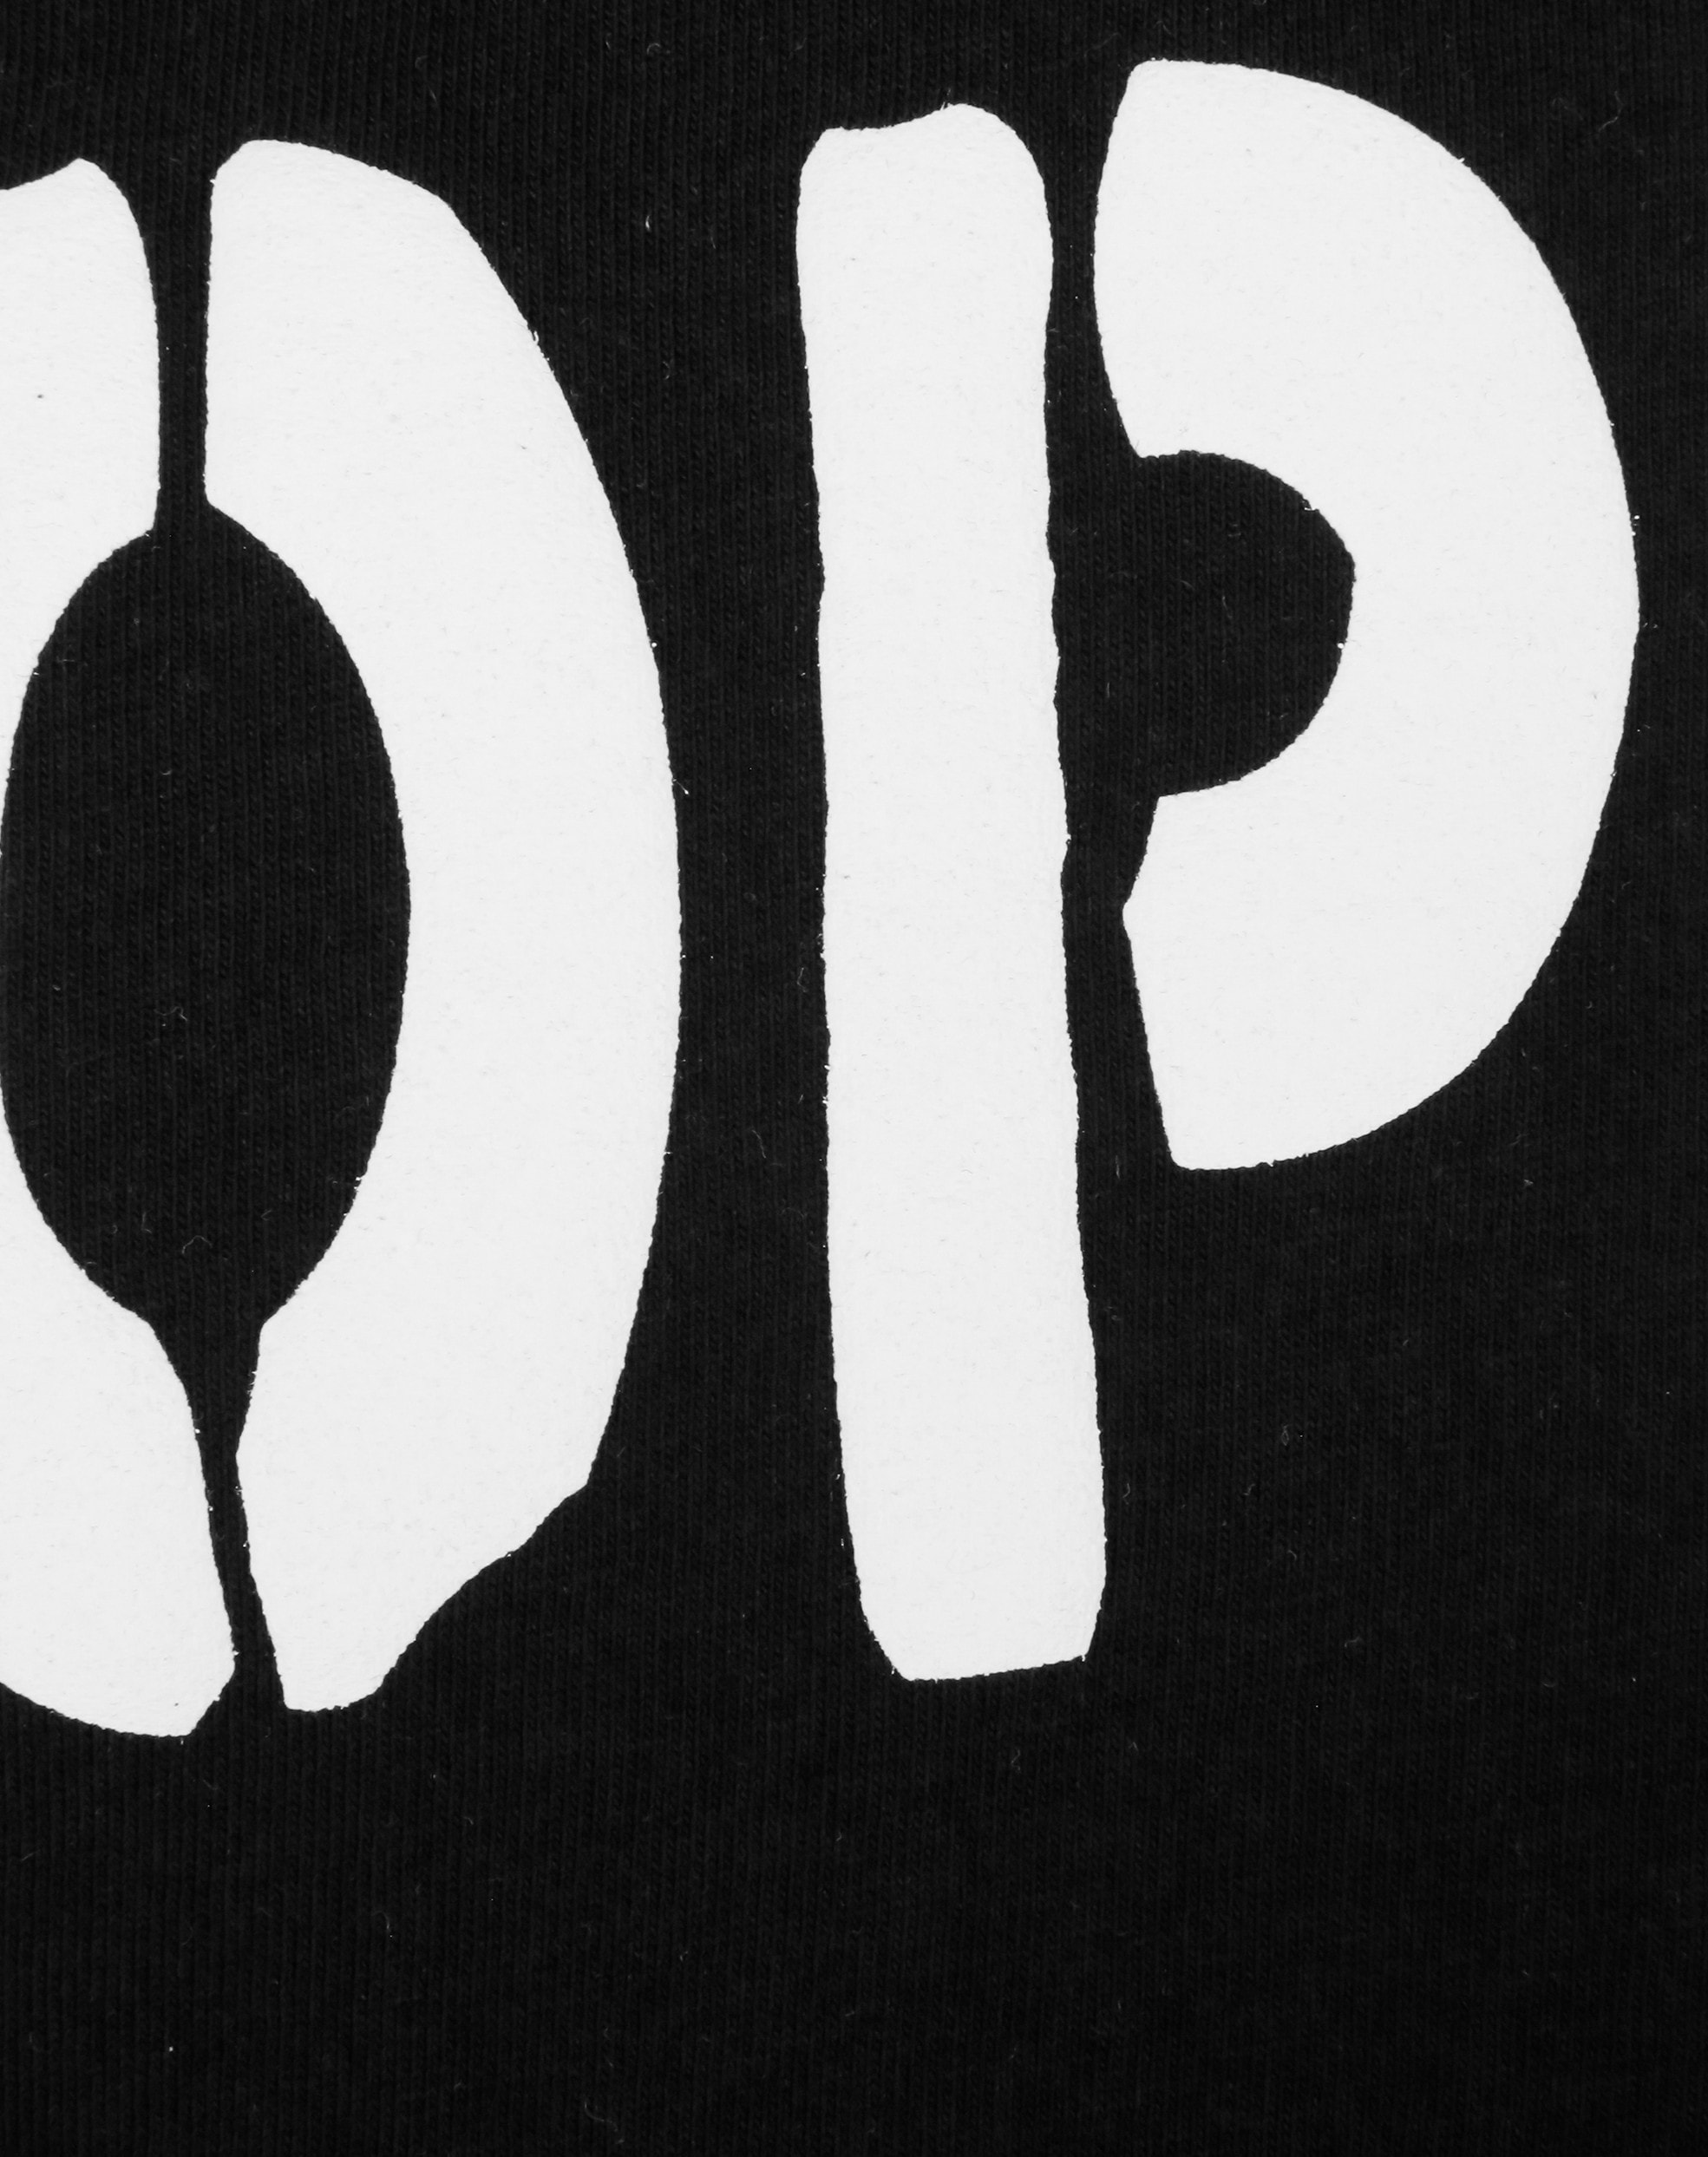 TOP GUN T-Shirt »T-Shirt TG20212016«